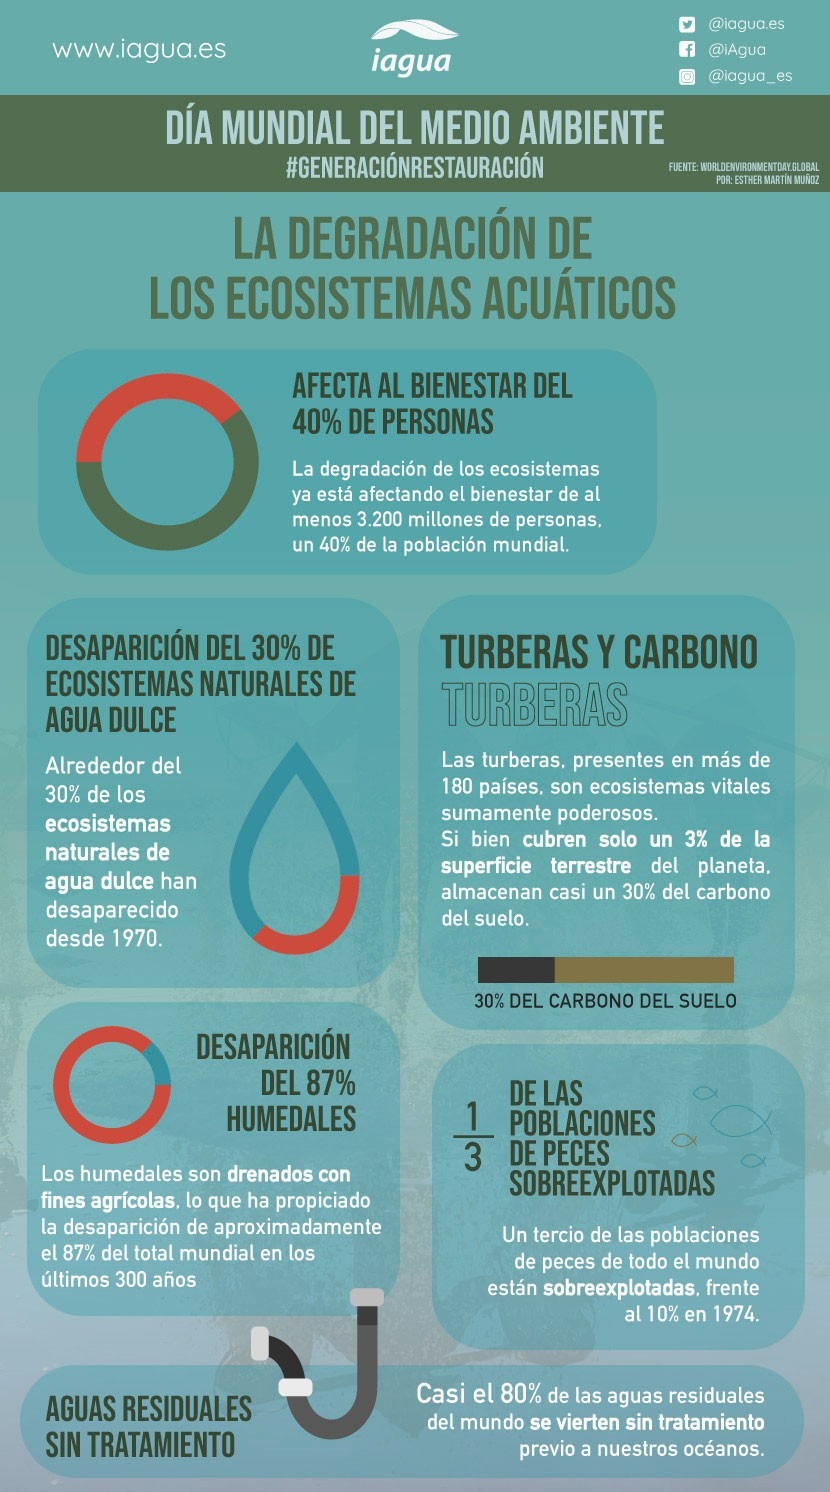 La degradación de los ecosistemas acuáticos: Infografía por el Día Mundial del Medio Ambiente 2021-Infografia (iagua)